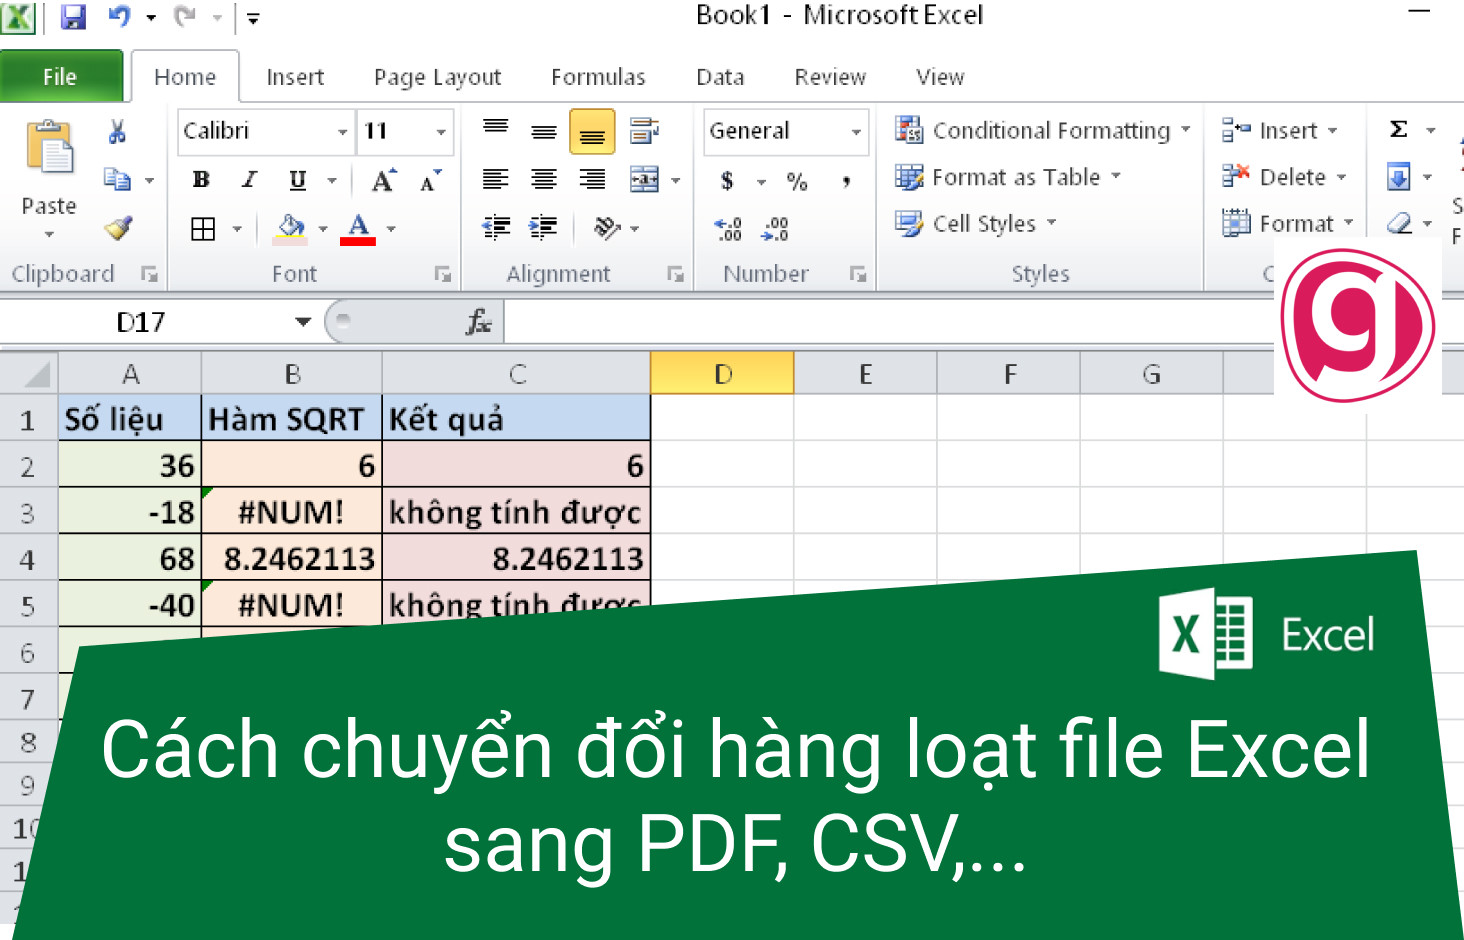 Cách chuyển nhiều file Excel sang PDF nhanh nhất?
